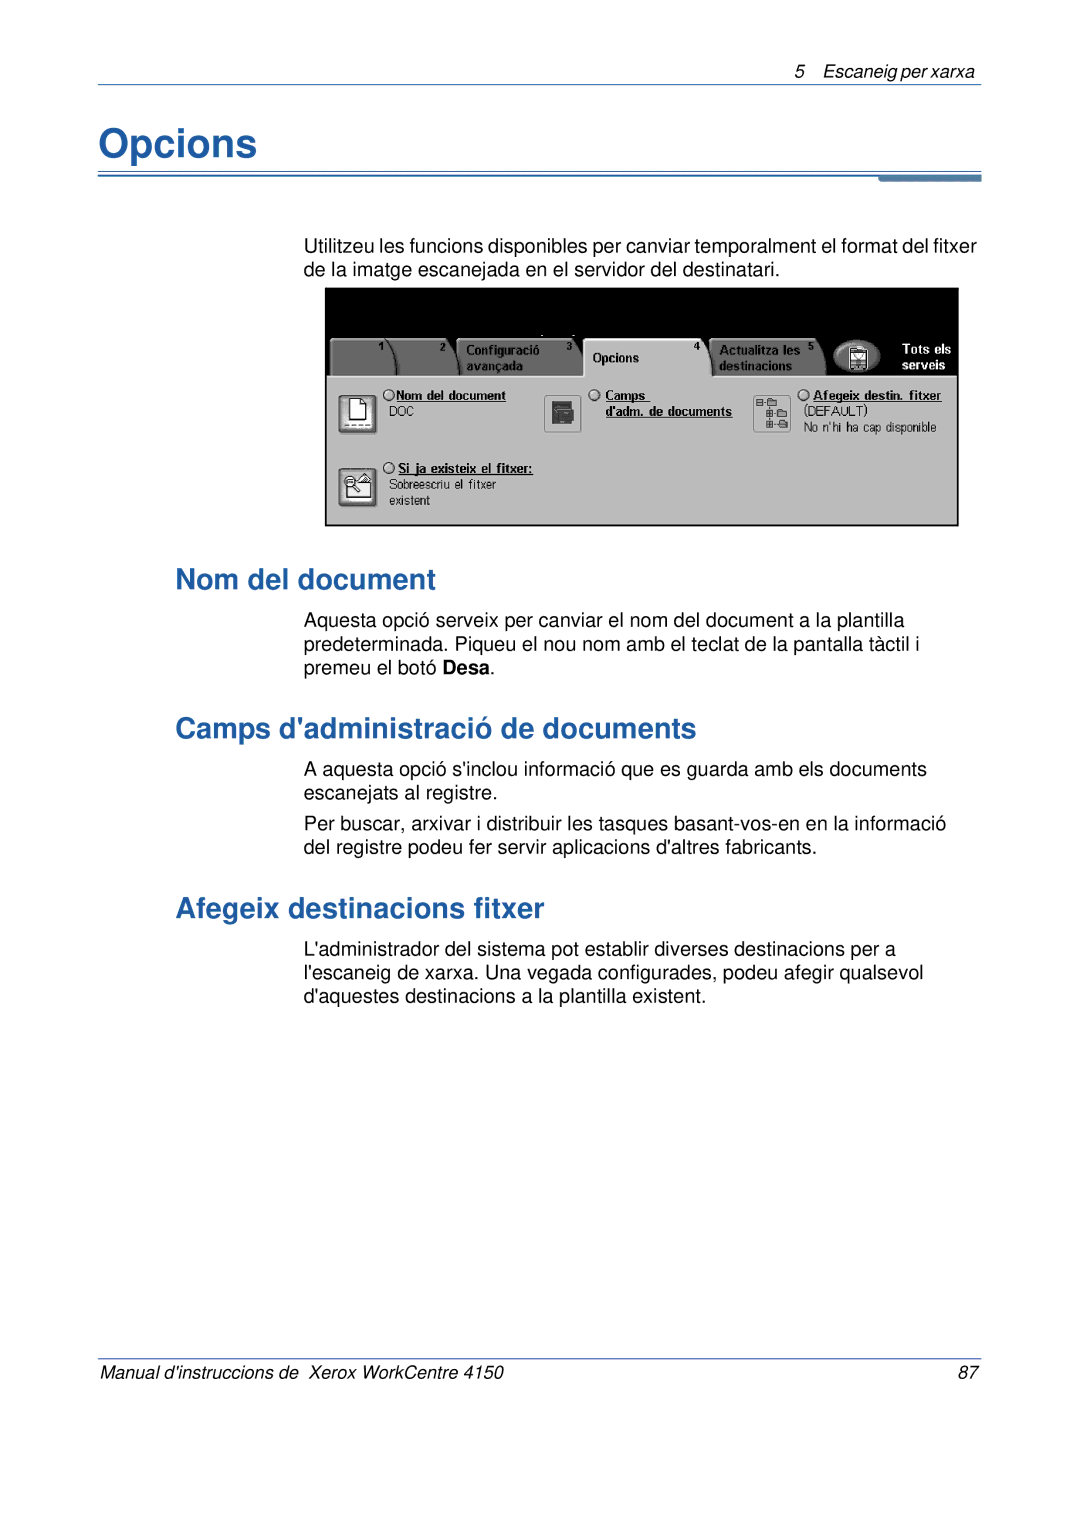 Xerox 5.0 24.03.06 manual Opcions, Nom del document, Camps dadministració de documents, Afegeix destinacions fitxer 